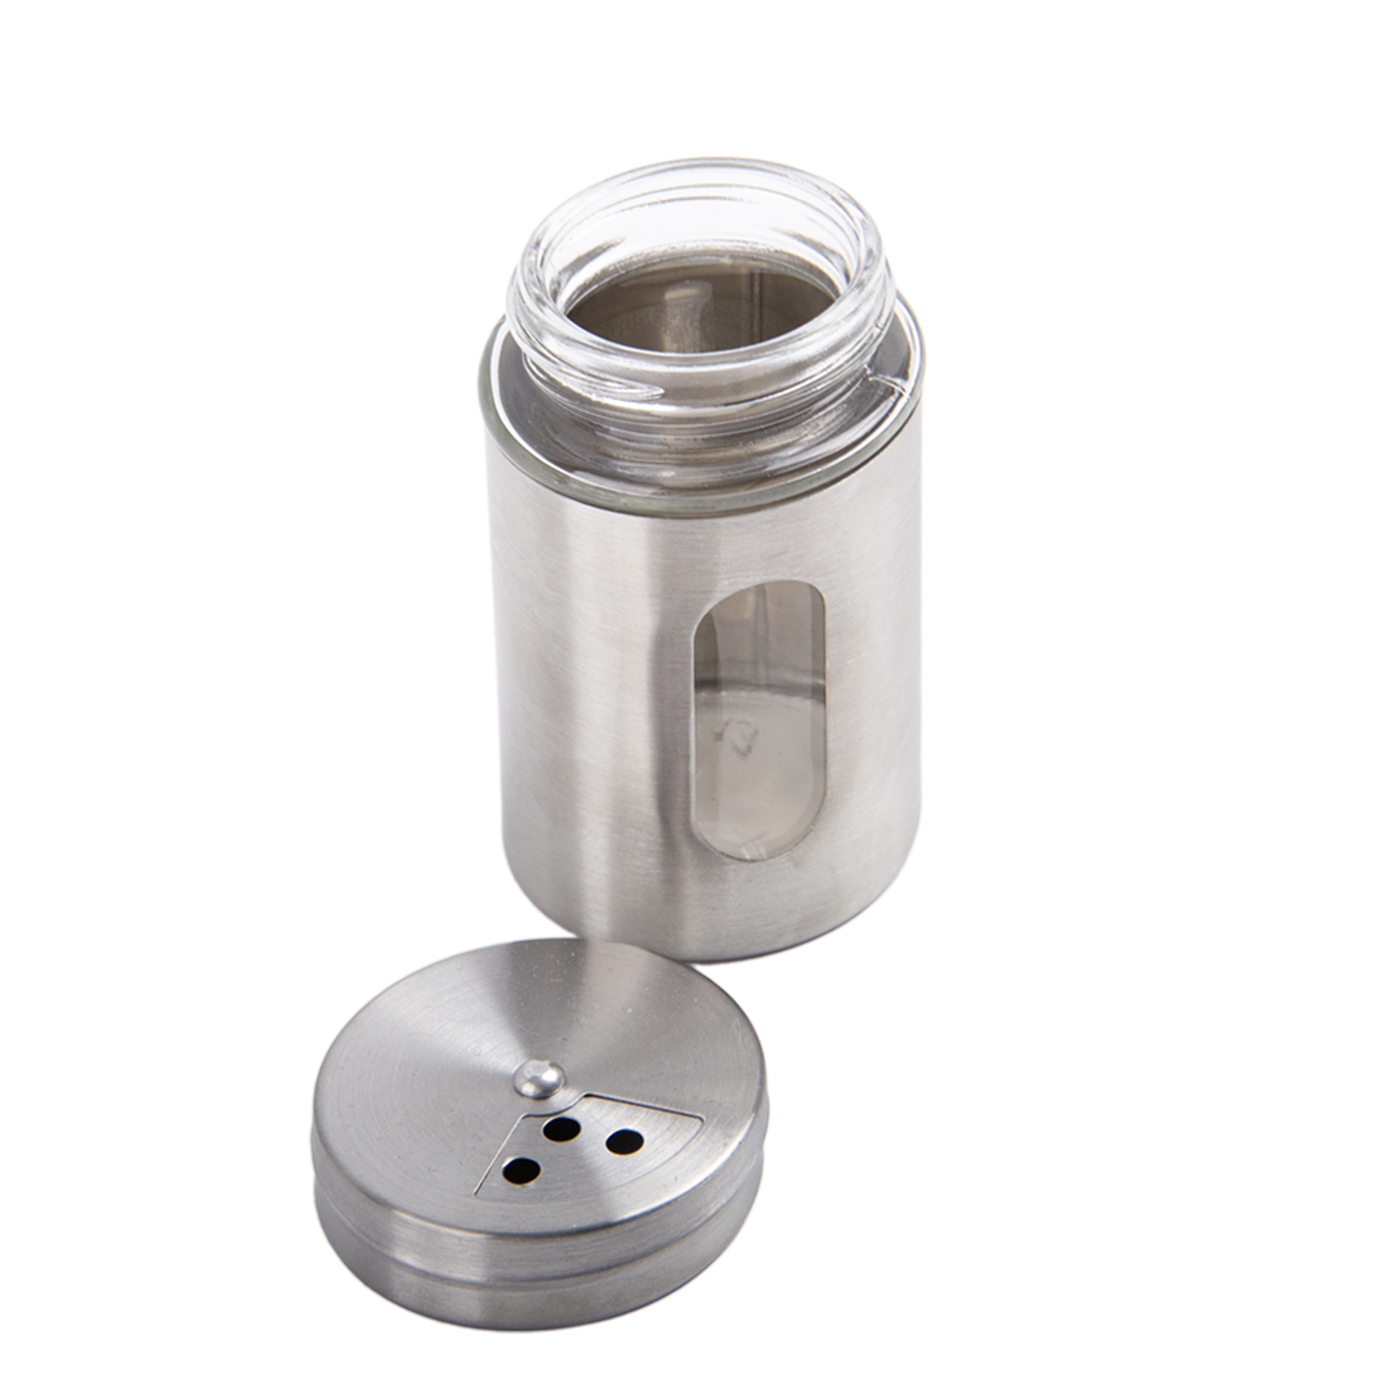 Stainless Steel Salt And Pepper Shaker2